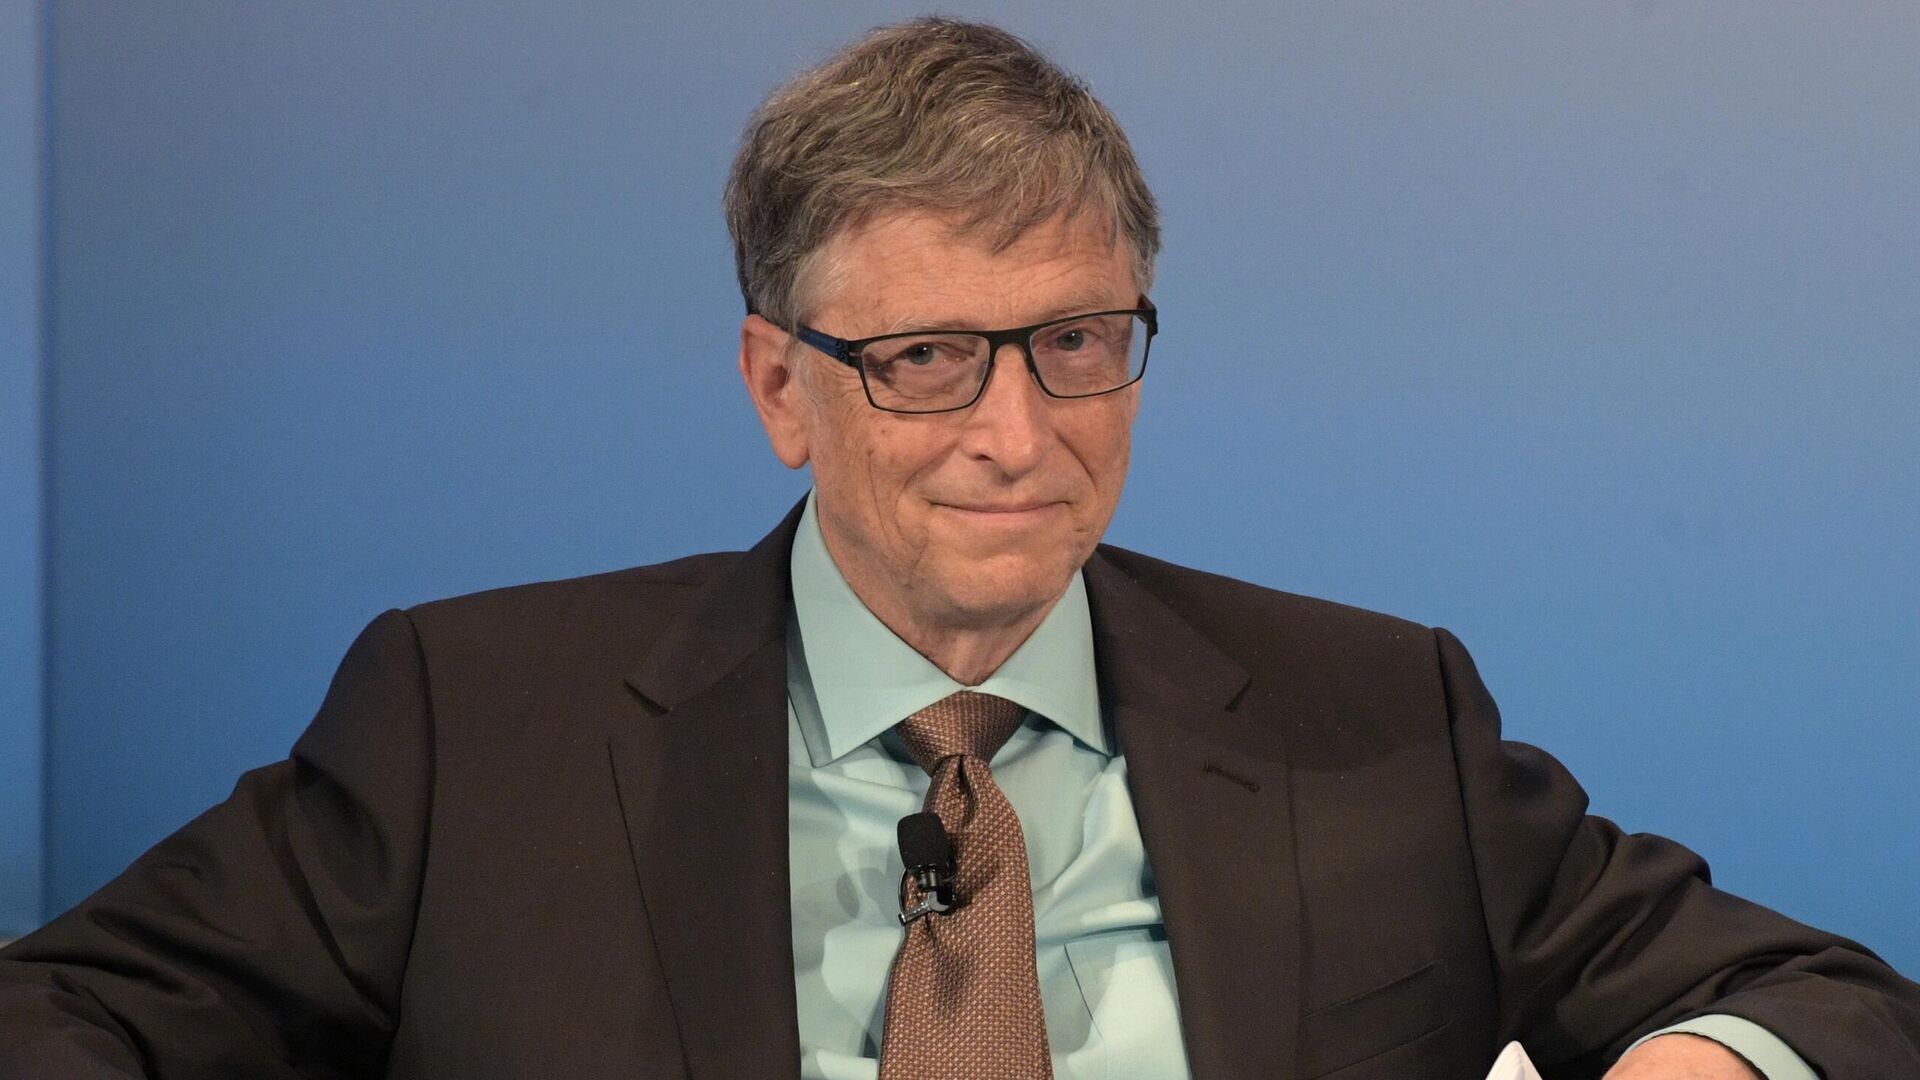 Билл Гейтс опустился на пятое место в списке богатейших людей